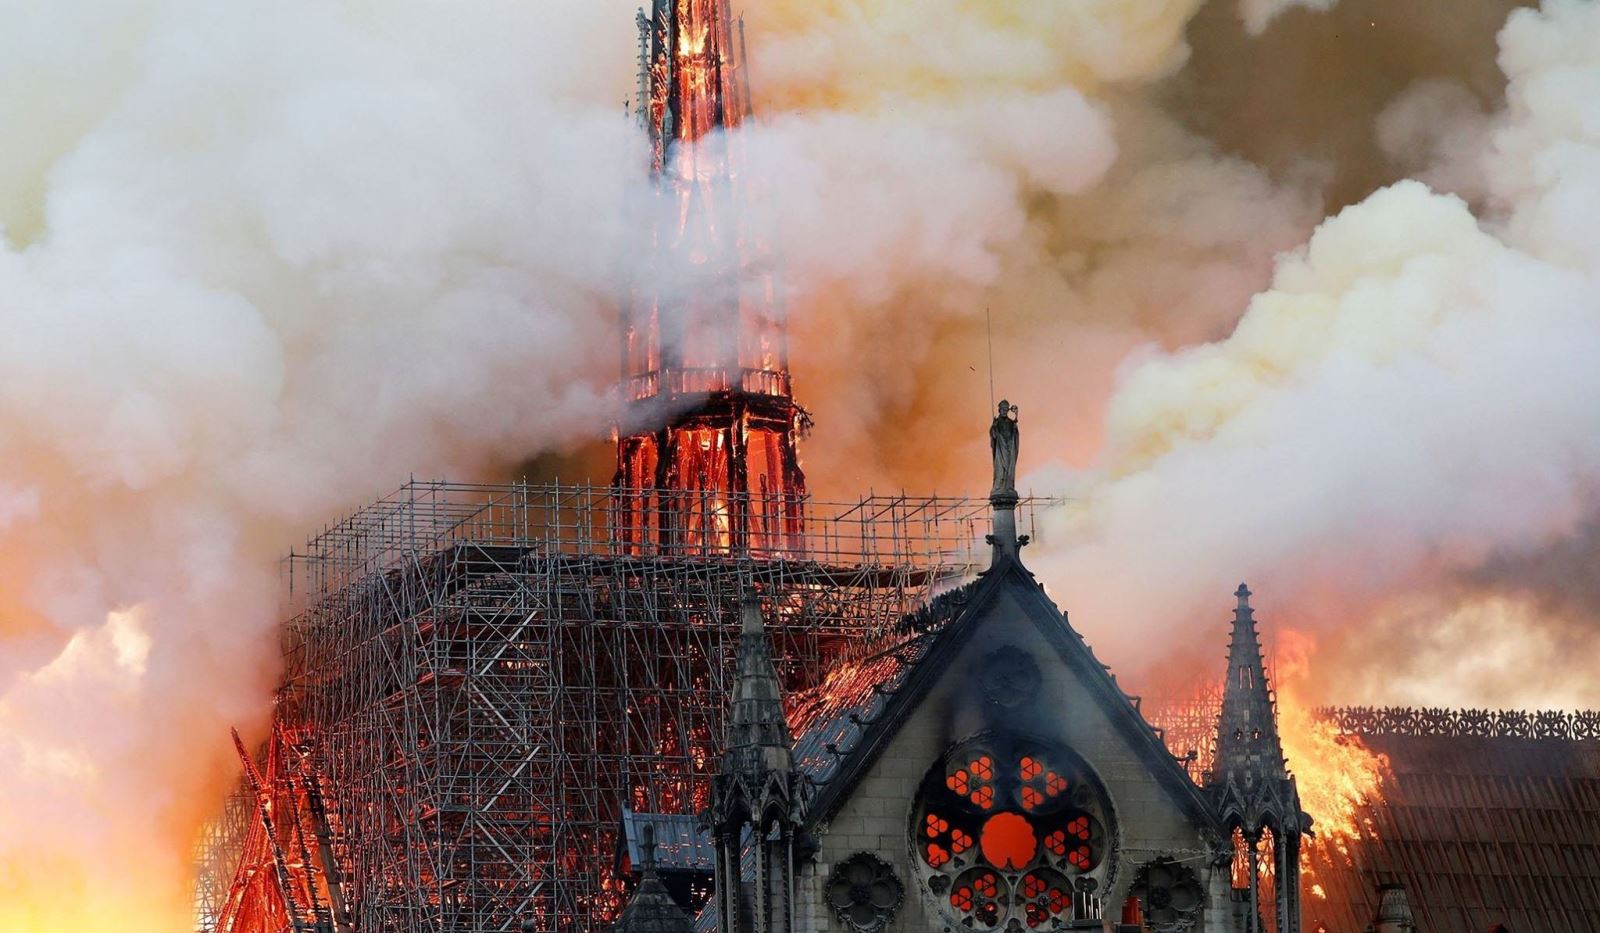 Toàn cảnh Nhà thờ Đức Bà Paris 850 tuổi chìm trong biển lửa